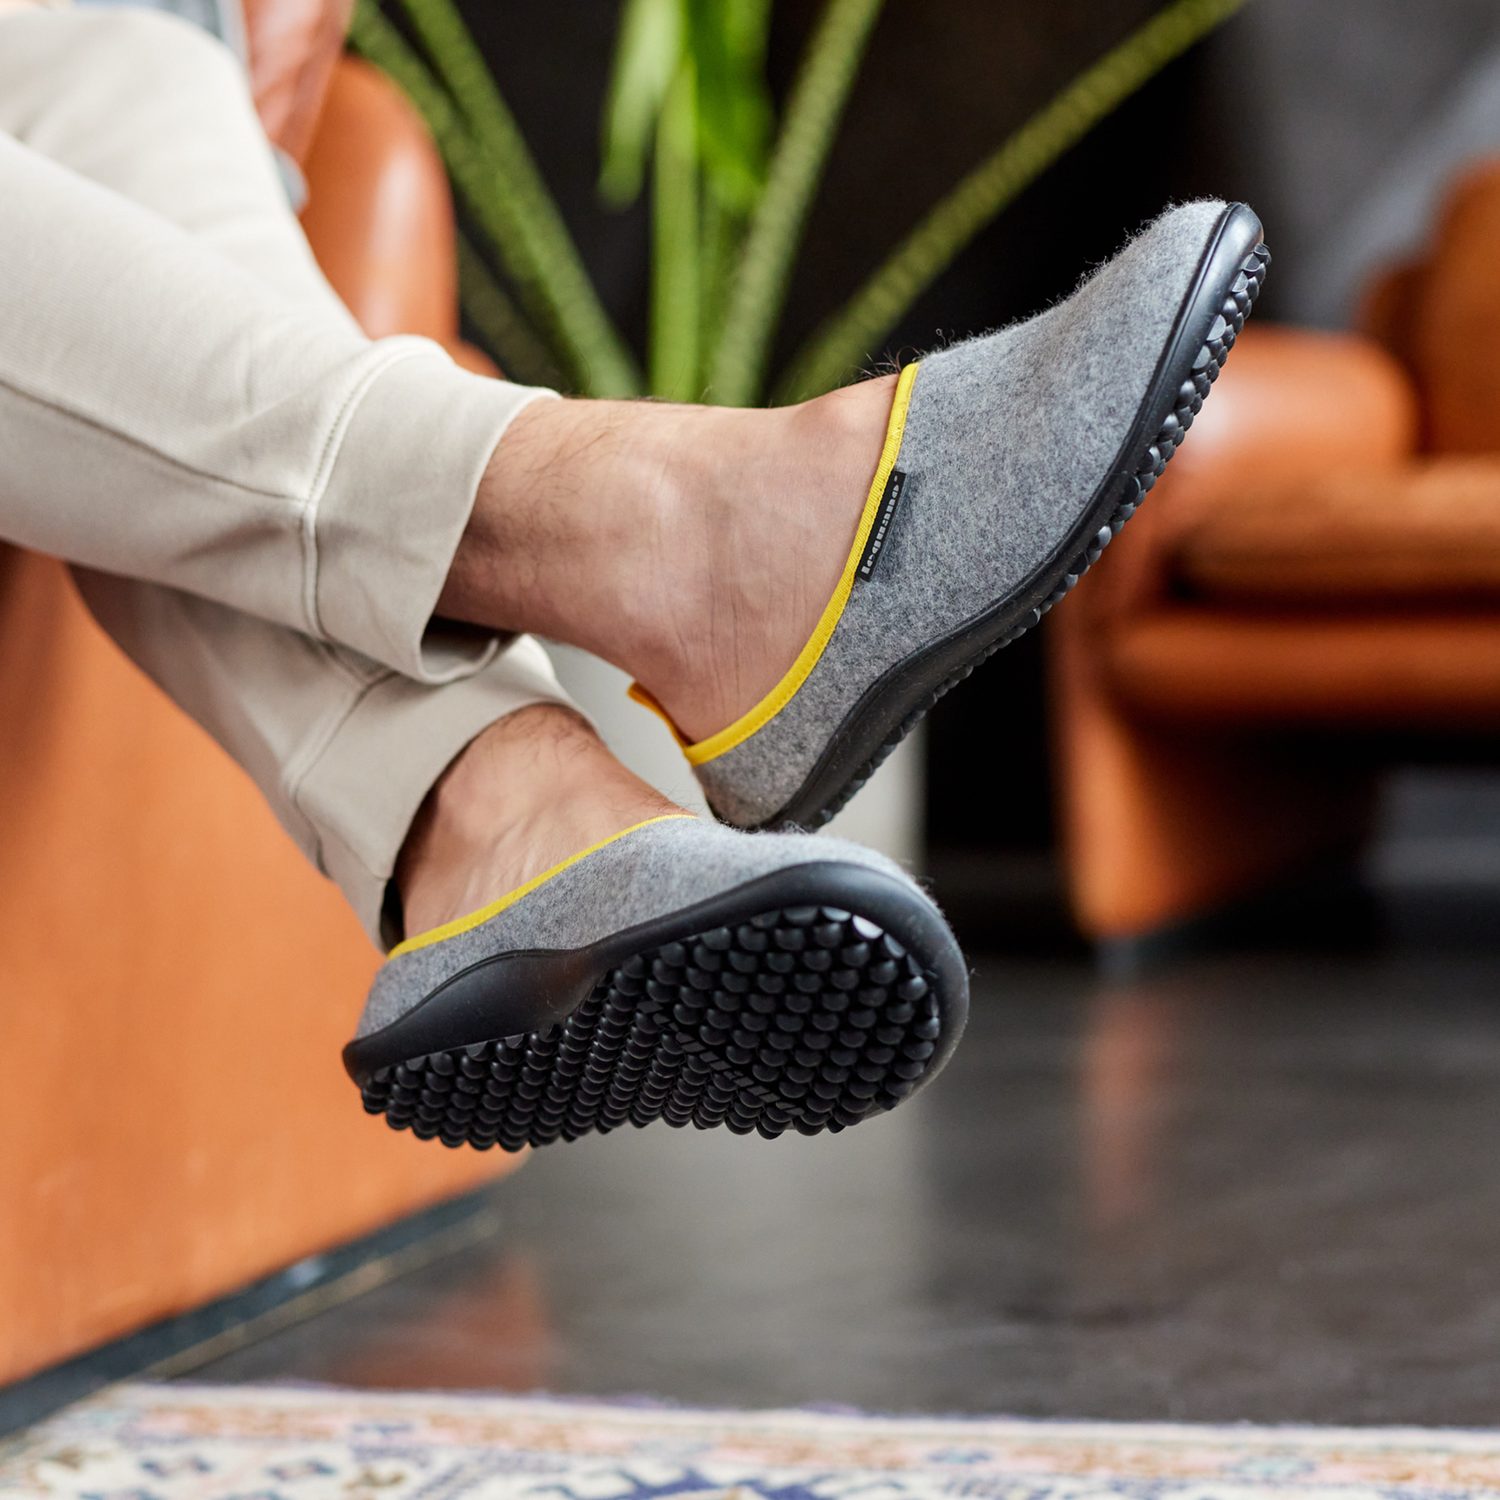 naBOSo – Nazujte barefooty do kanceláře, ordinace i jako domácí obuv –  Zažijte pohodlí barefoot bot